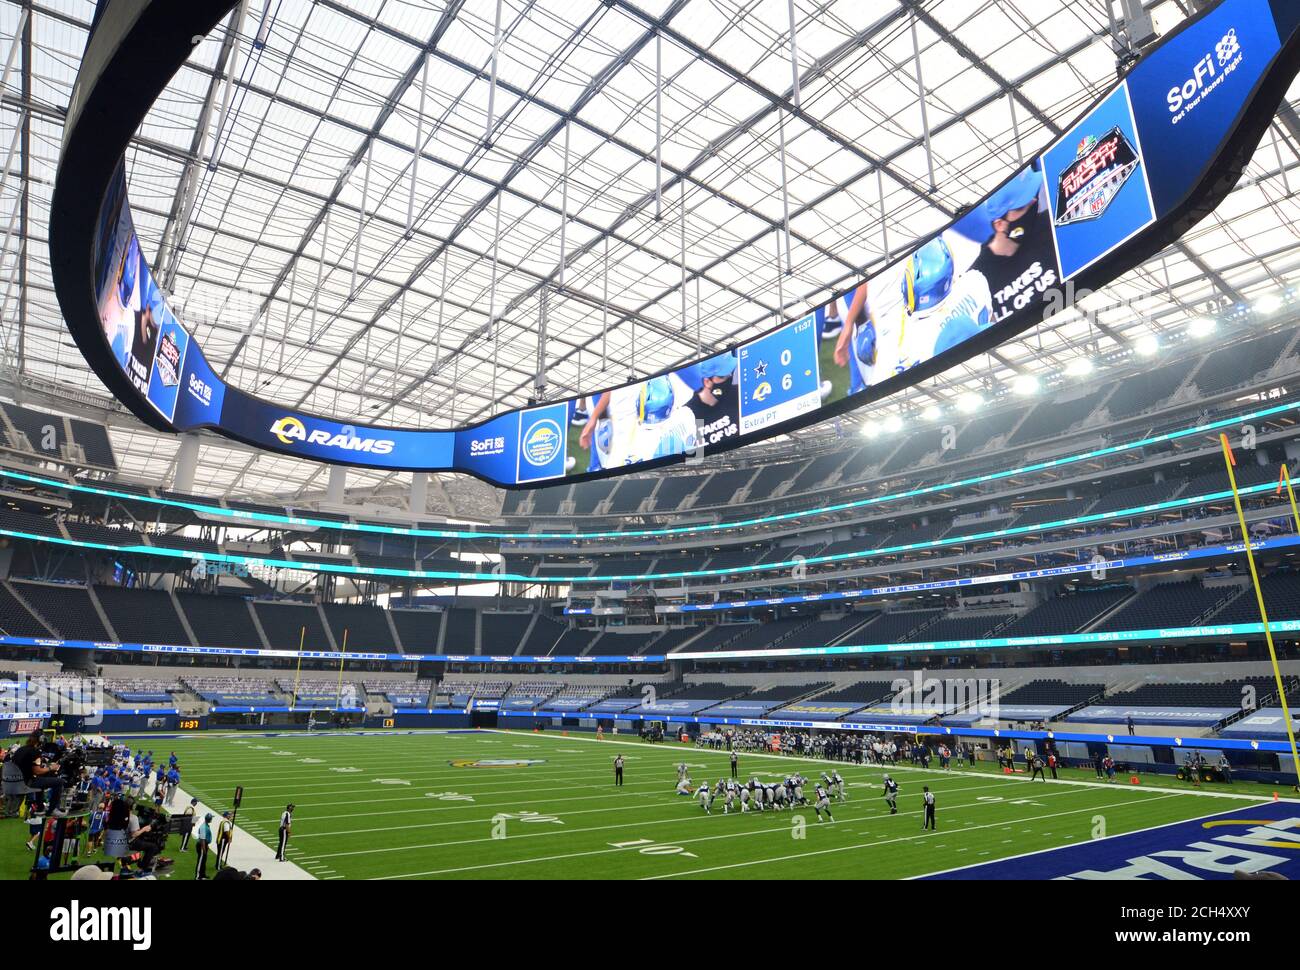 Inglewood, Usa. September 2020. Los Angeles Rams spielen gegen die Dallas Cowboys im SoFi Stadium in Inglewood, Kalifornien am Sonntag, 13. September 2020. Foto von Lori Shepler/UPI Kredit: UPI/Alamy Live Nachrichten Stockfoto